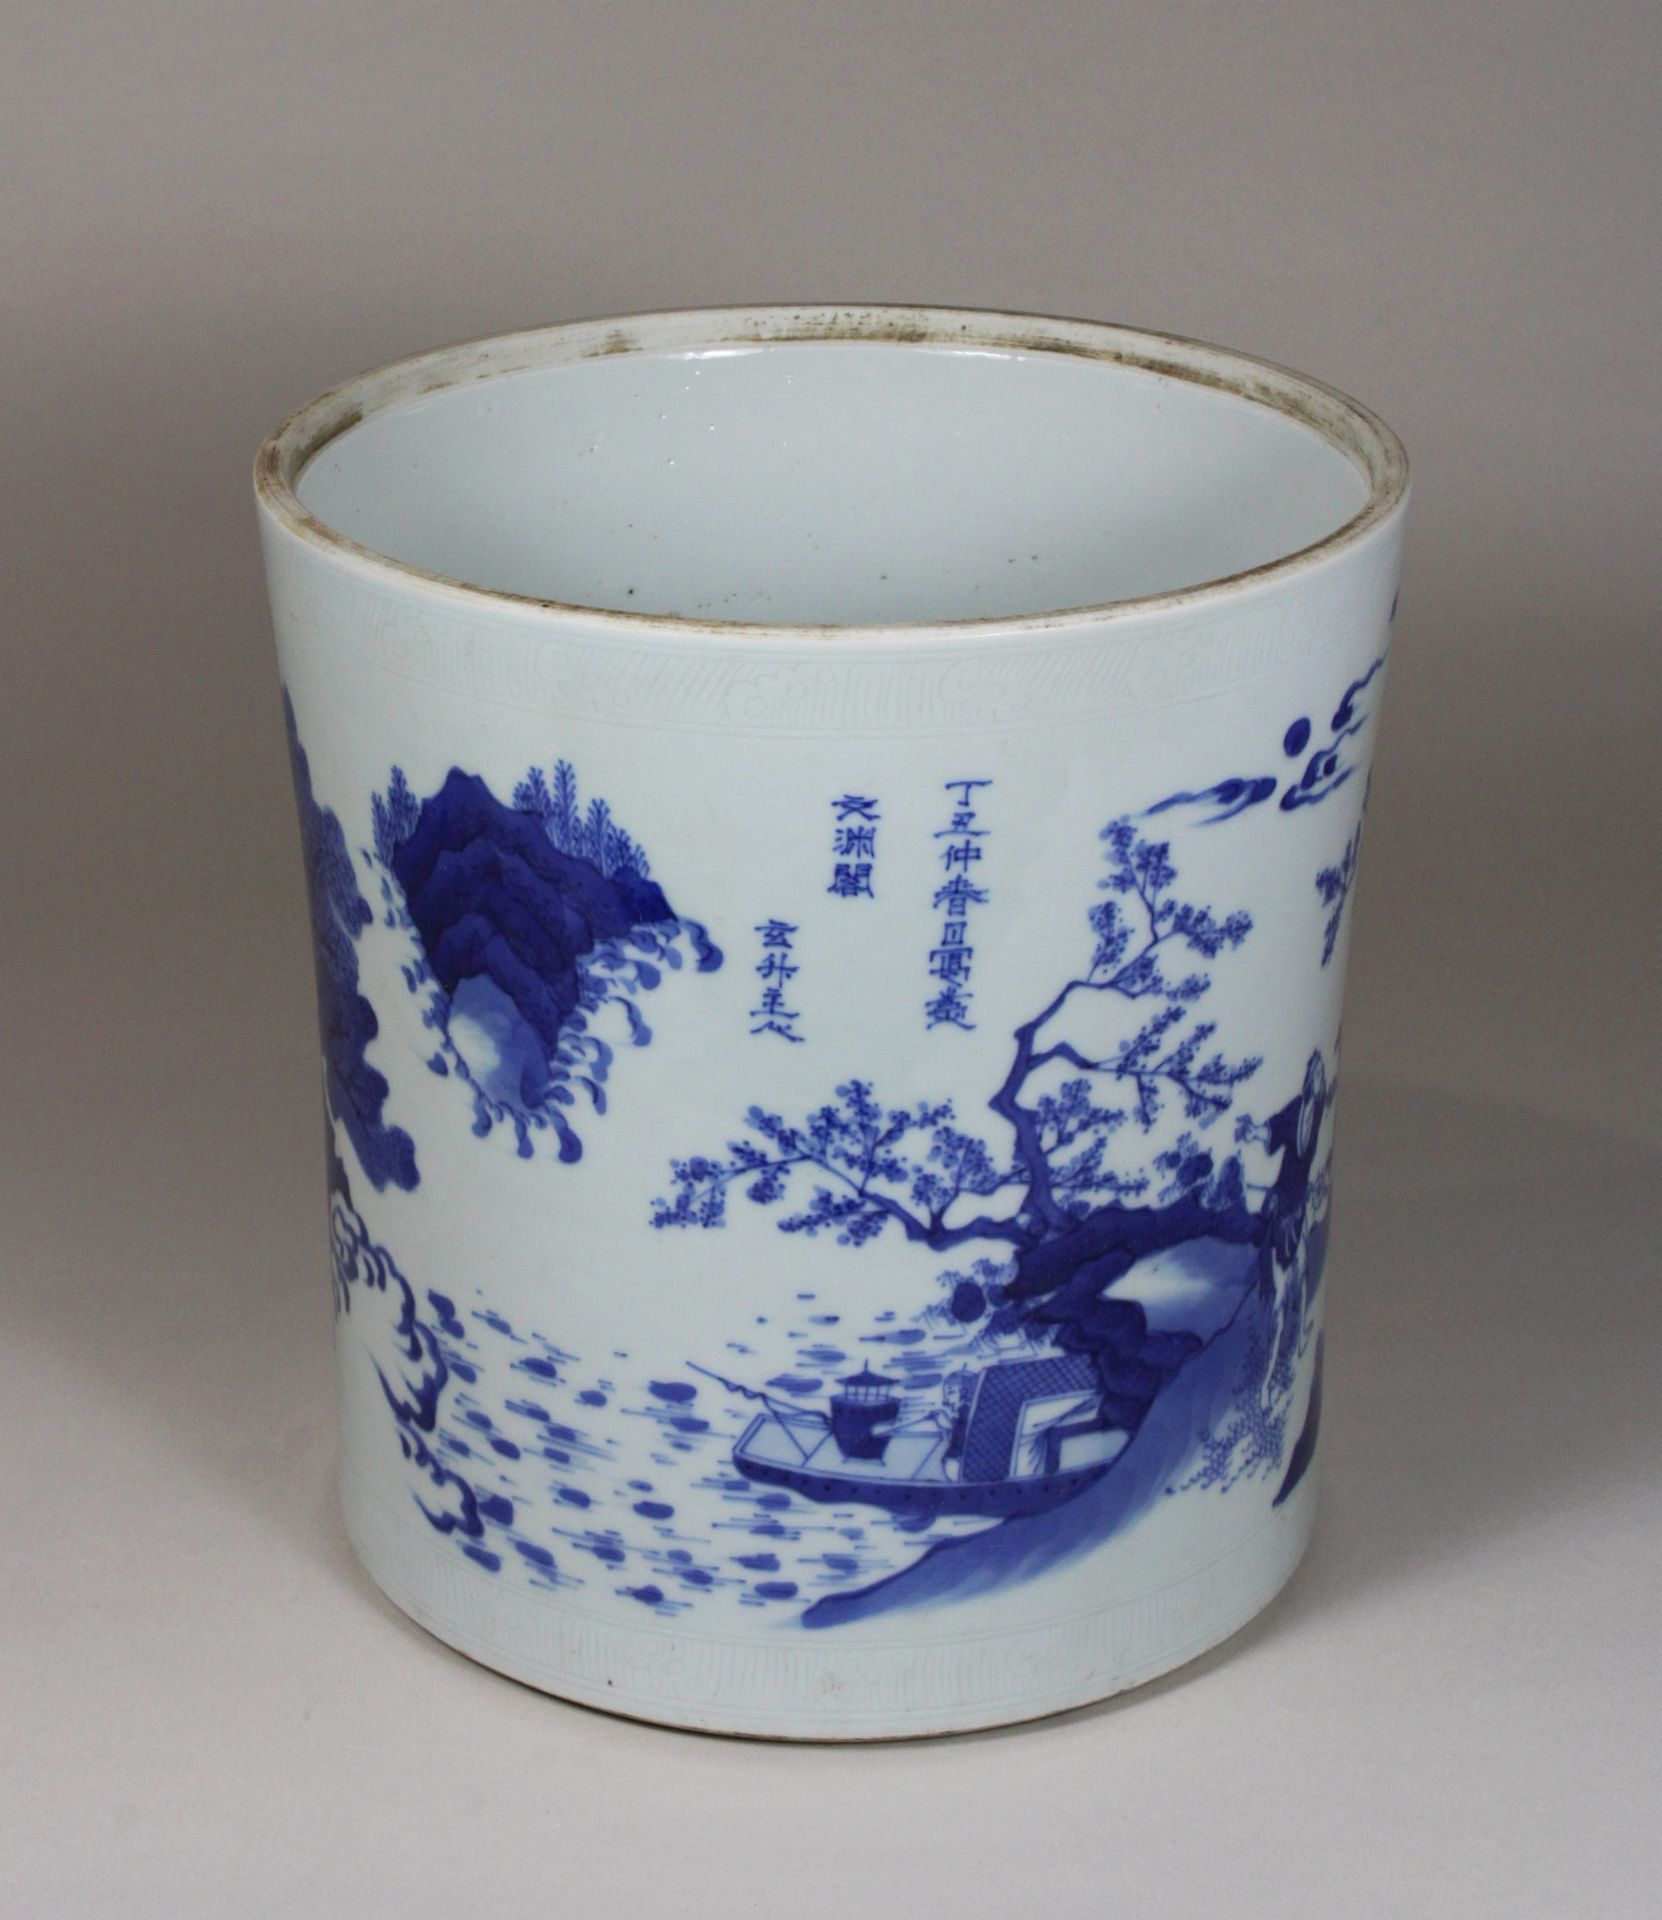 China, großer Pinselbecher, in Blau - Weiß, florale und figürliche Darstellung, Dm 21, H 22, - Image 3 of 4